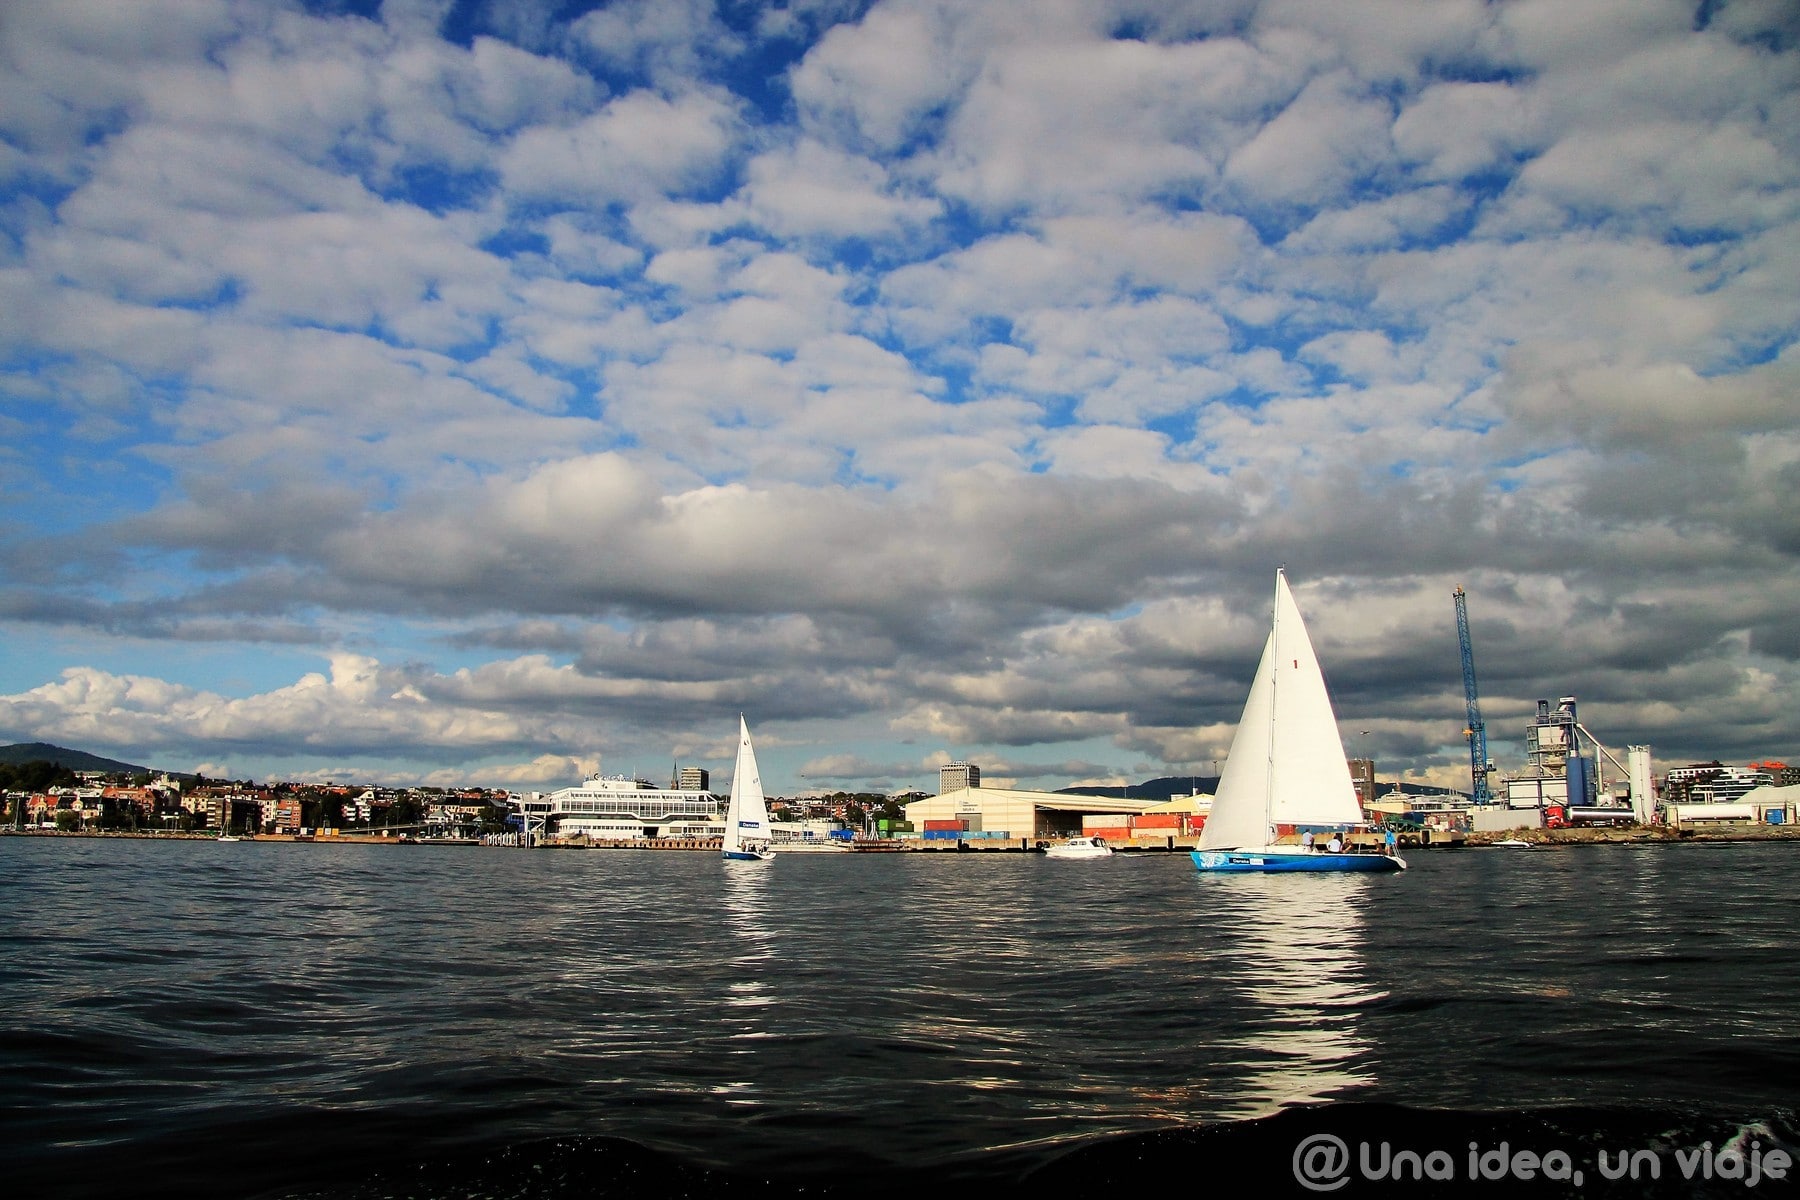 Qué hacer en Oslo: pasear por el puerto deportivo